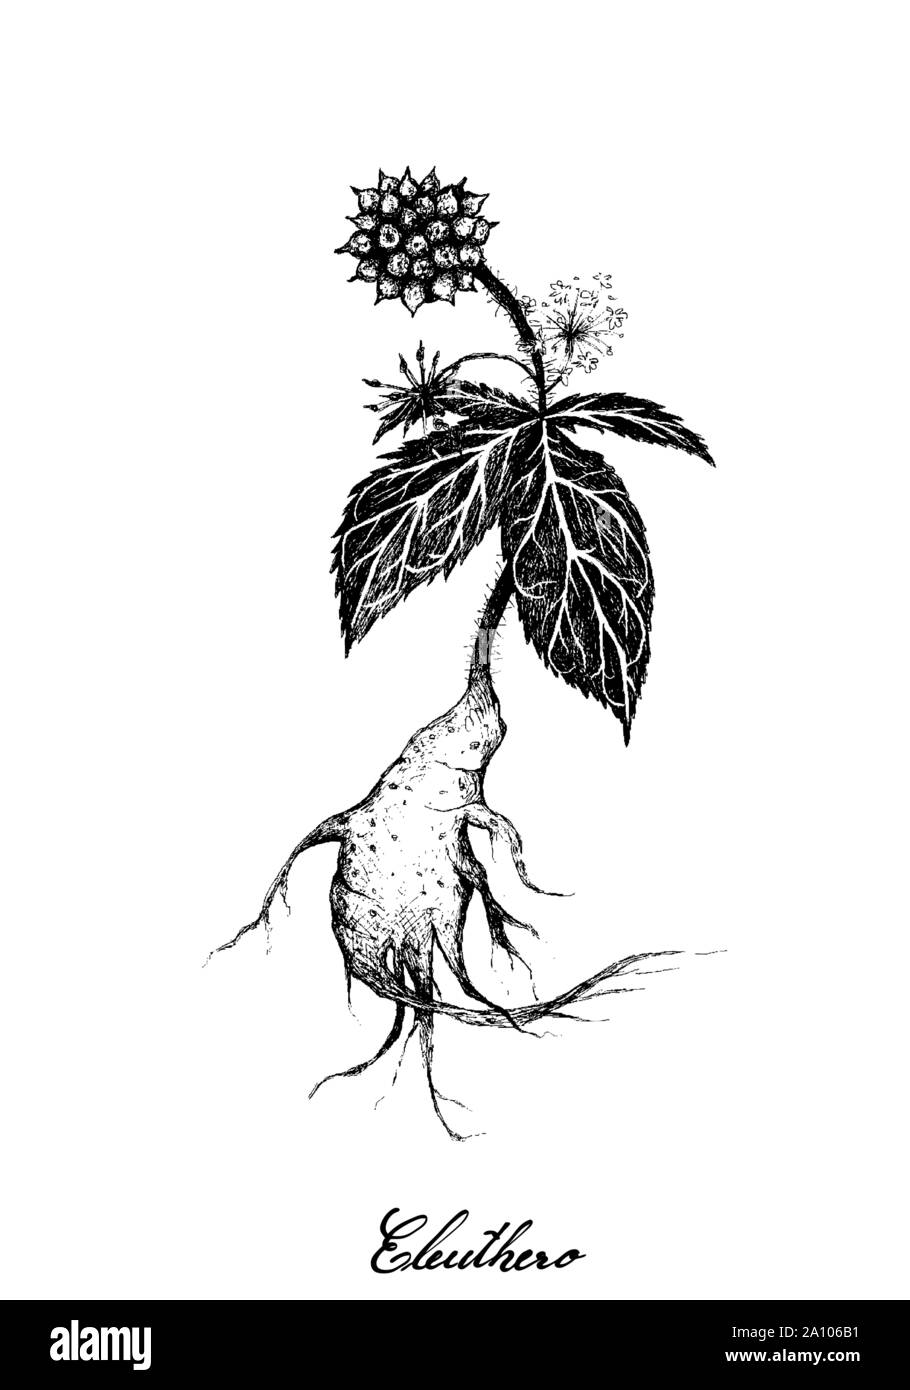 Kräuter und Pflanzen, Handgezeichnete Abbildung: Eleutherococcus Senticosus, Eleuthero oder Sibirische Ginseng Pflanzen, für ein Nahrungsergänzungsmittel und Cosme verwendet Stock Vektor